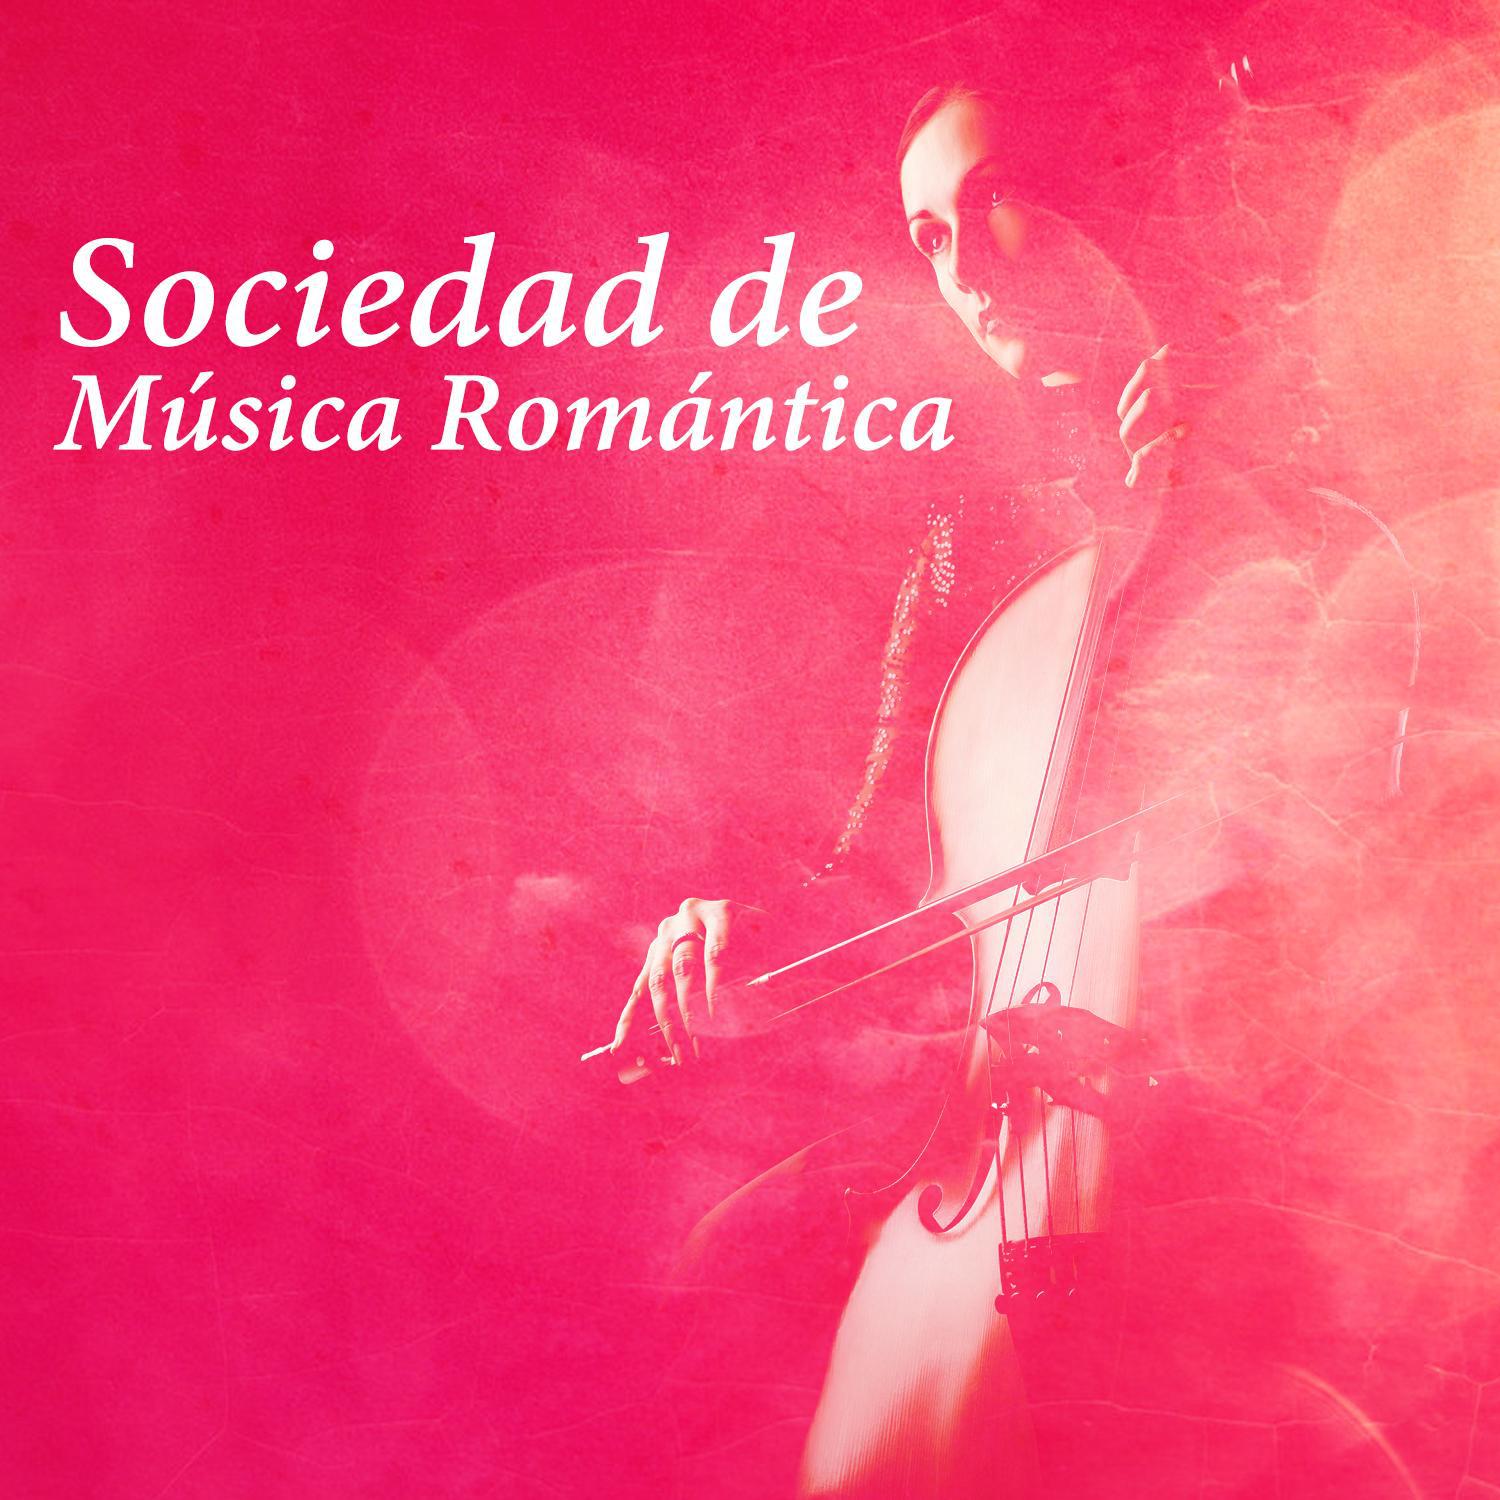 Sociedad de Música Romántica